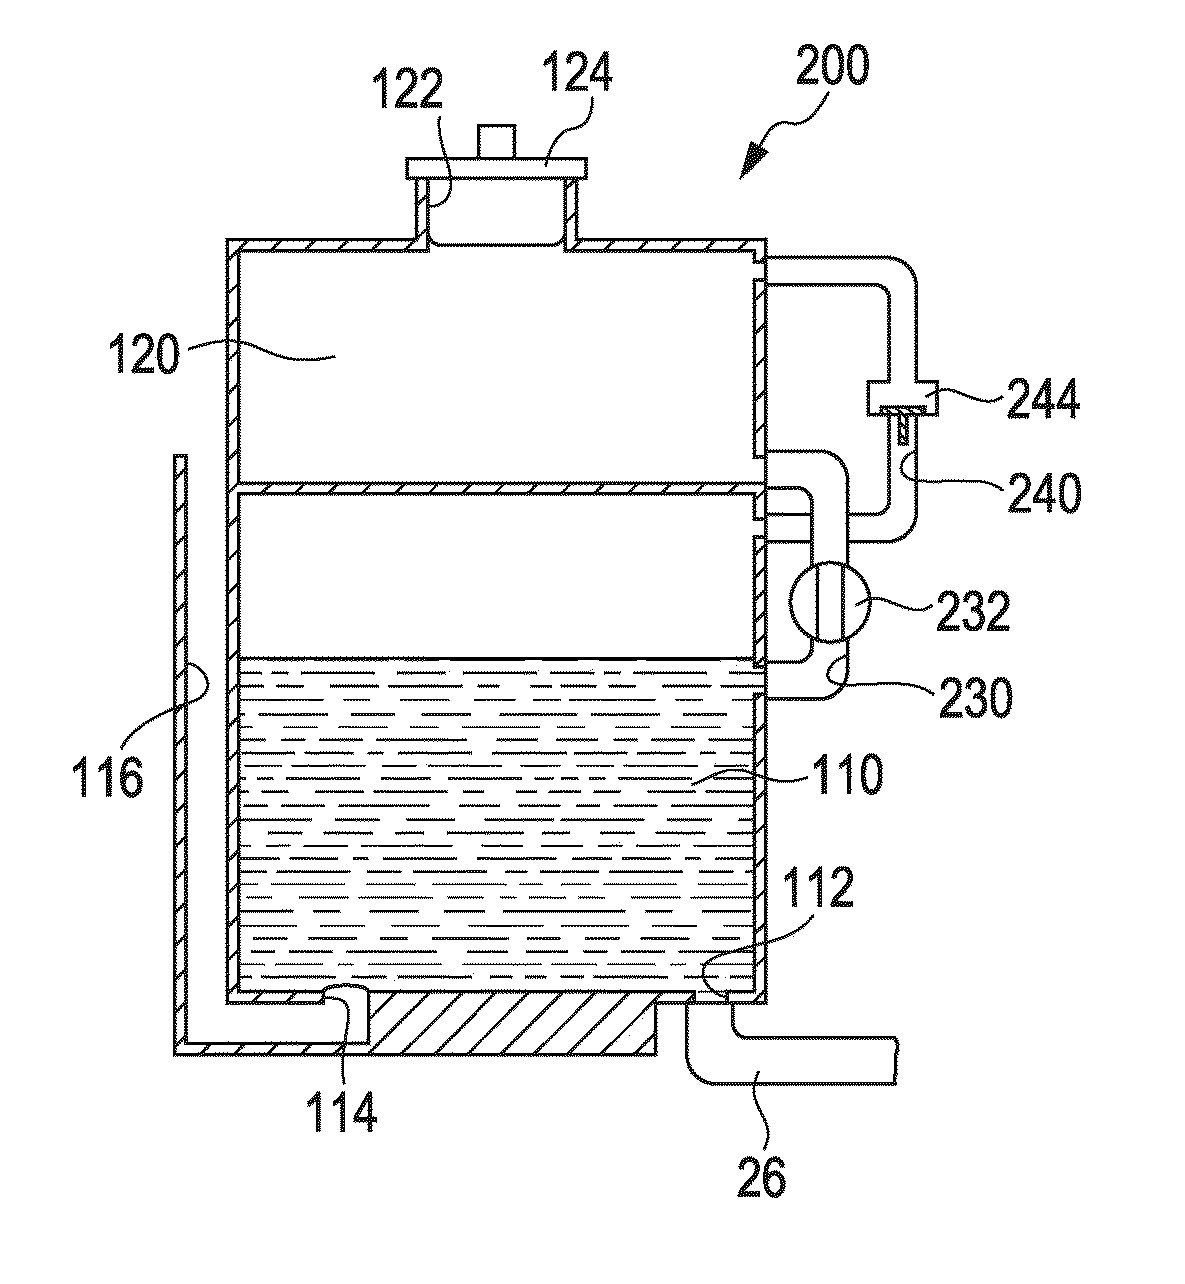 Liquid holding container and liquid consuming apparatus